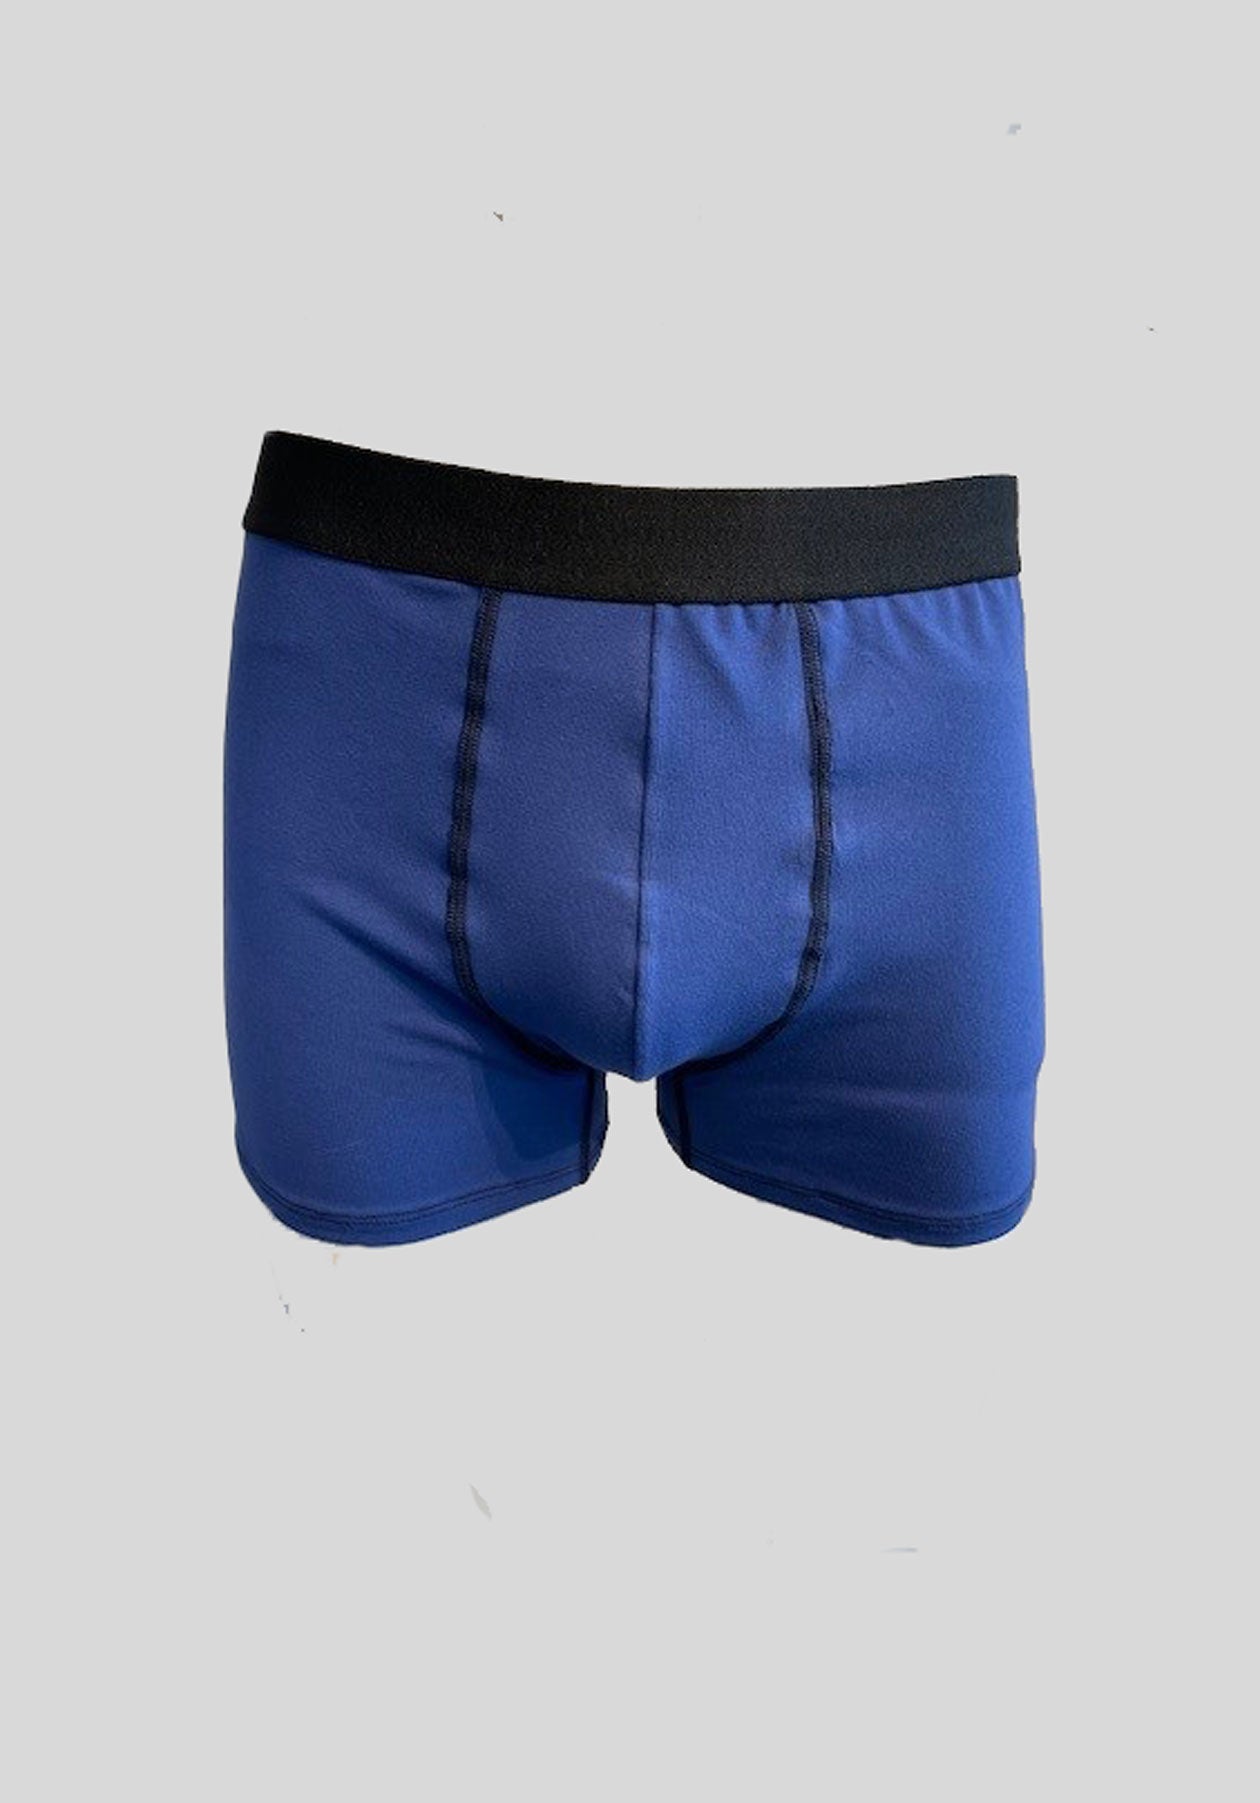 BOXER - Blue men's brief shorts